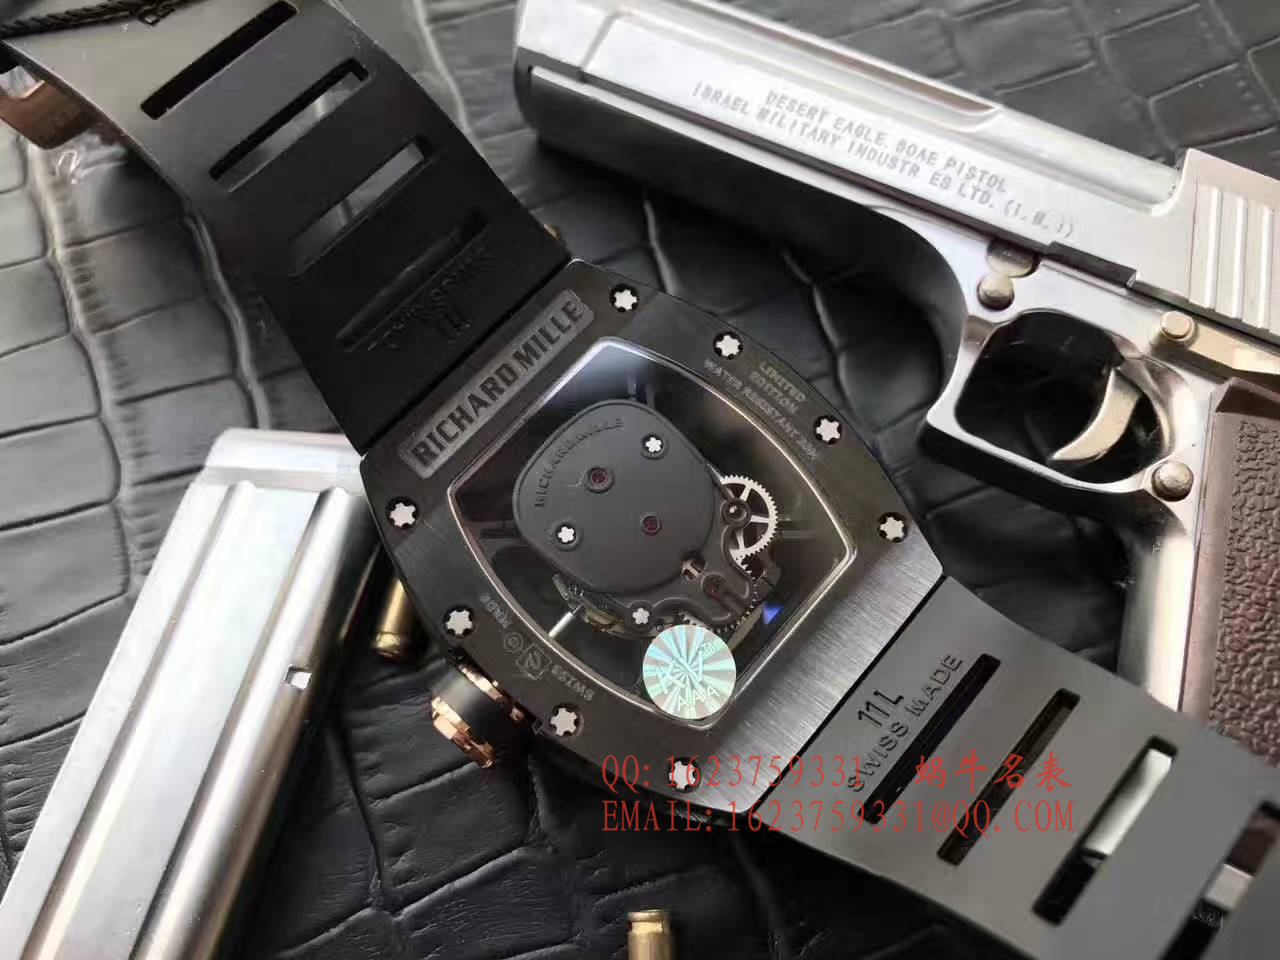 【视频解析】1:1超A精仿KV出品顶级版理查德米勒骷髅头RM 52系列手表 / R007